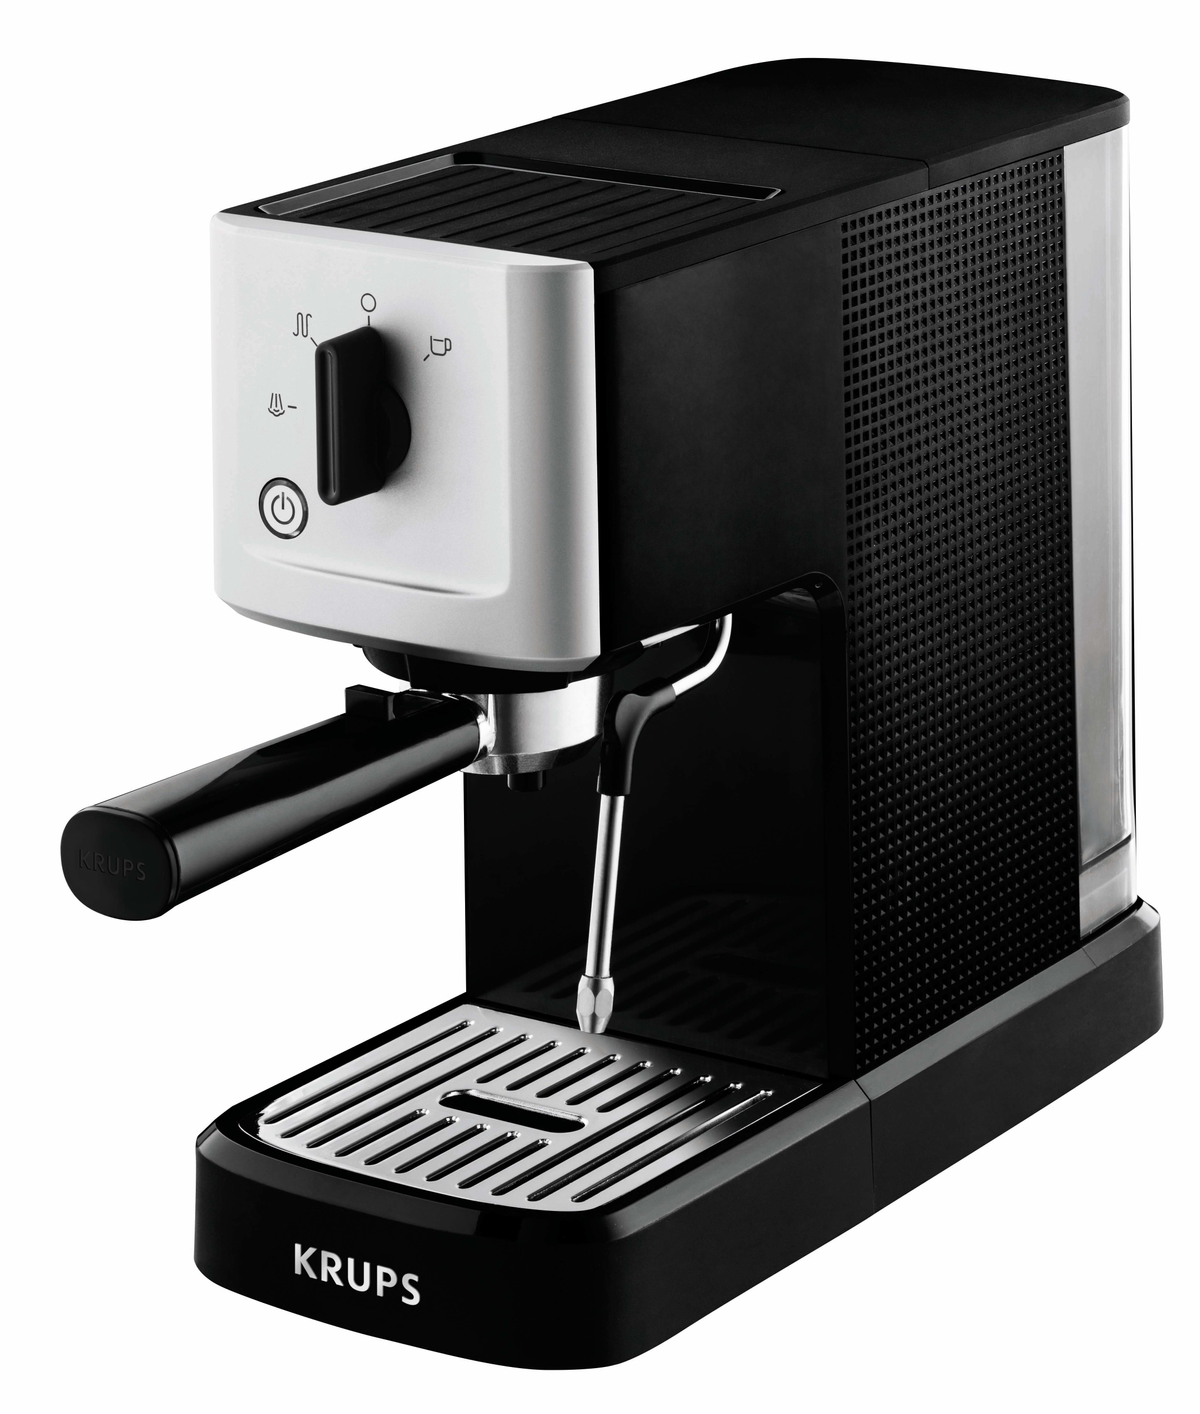 Cafetera Krups Xp344010 15 molido espresso calvi meca express steam pump xp3440 potencia 1460w capacidad del 1l negro compact manual 150 barbar 1460 2 0010942216650 s0421731